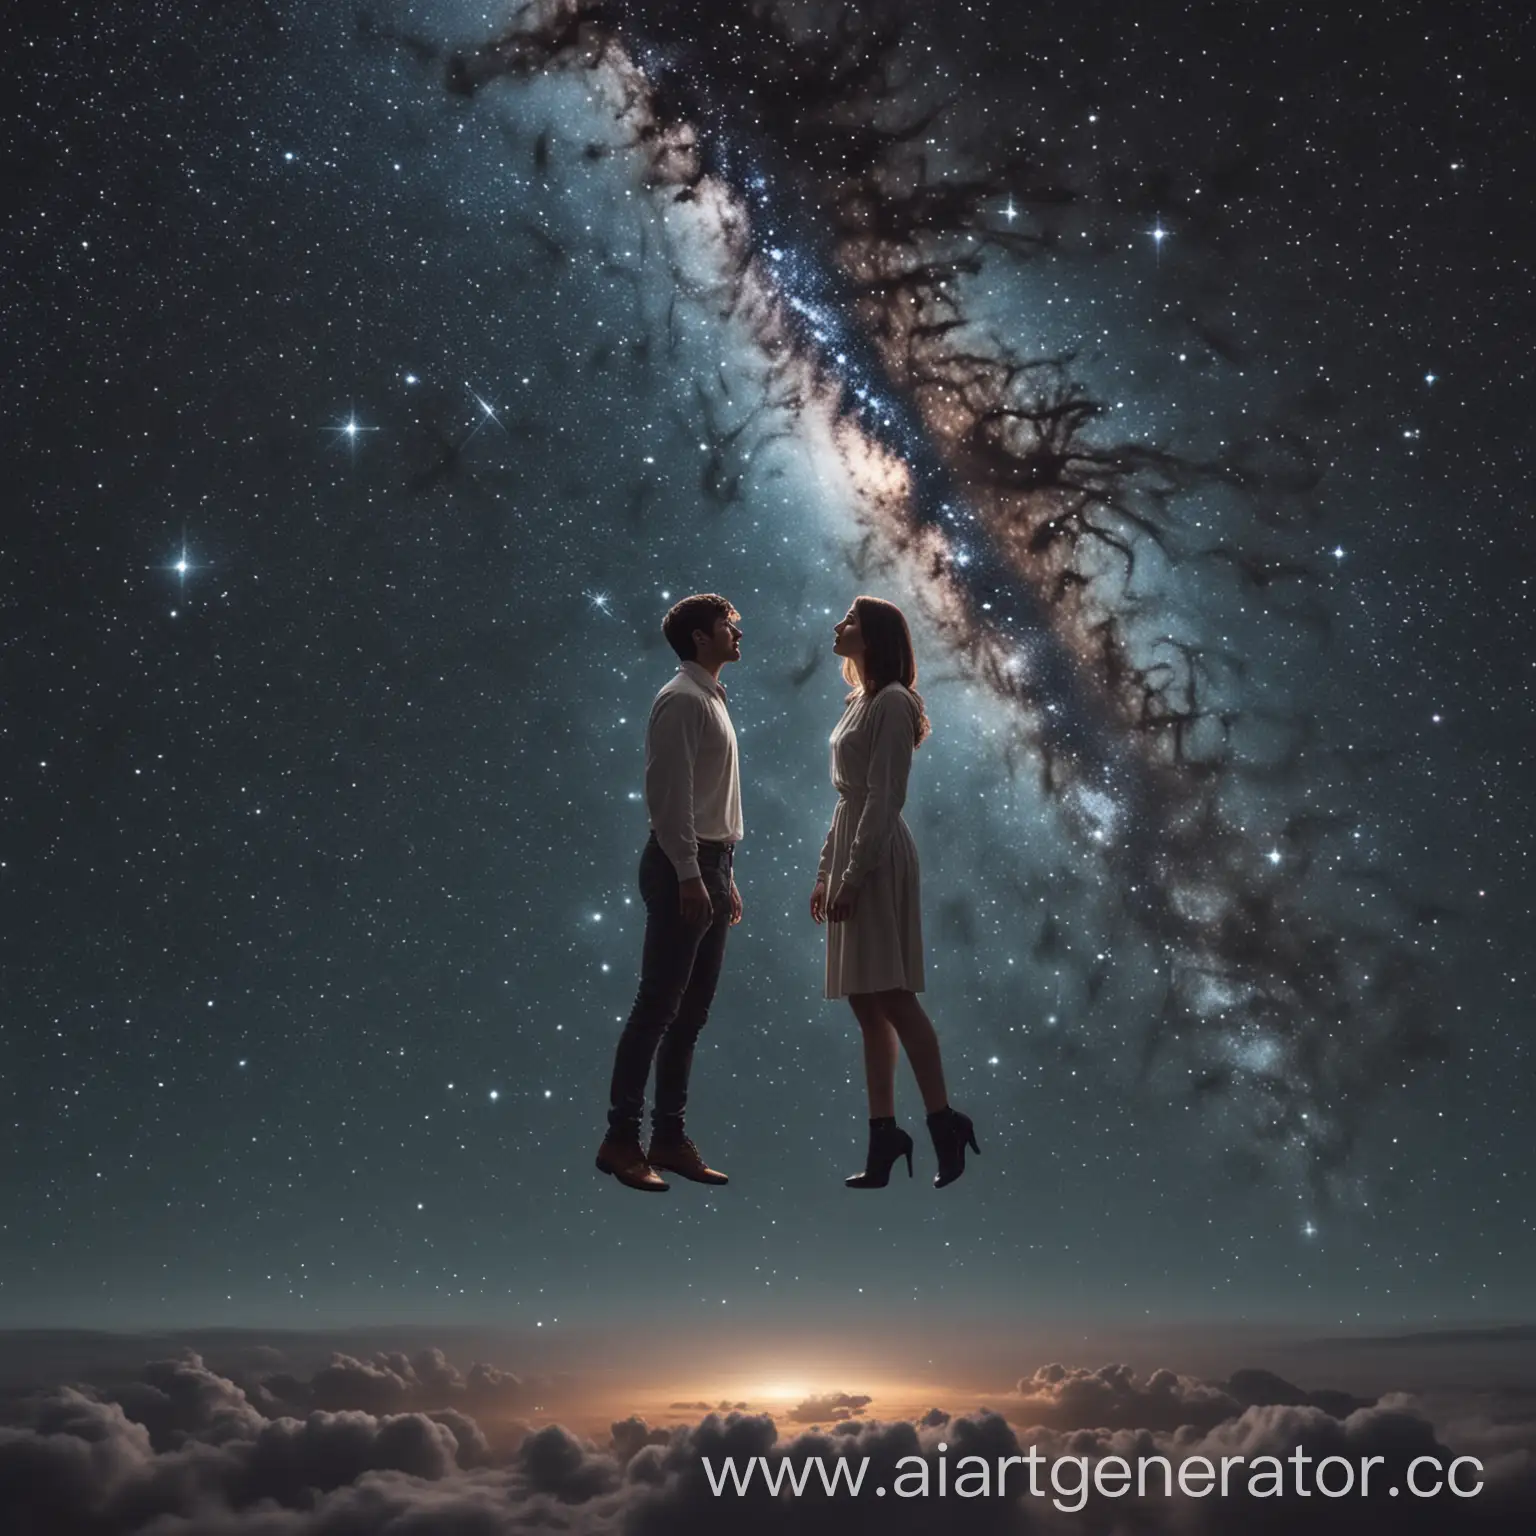 два человека мужчина и женщина левитируют вдалеке,смотрят друга на друга,они в космосе и на фоне из видно звёзды